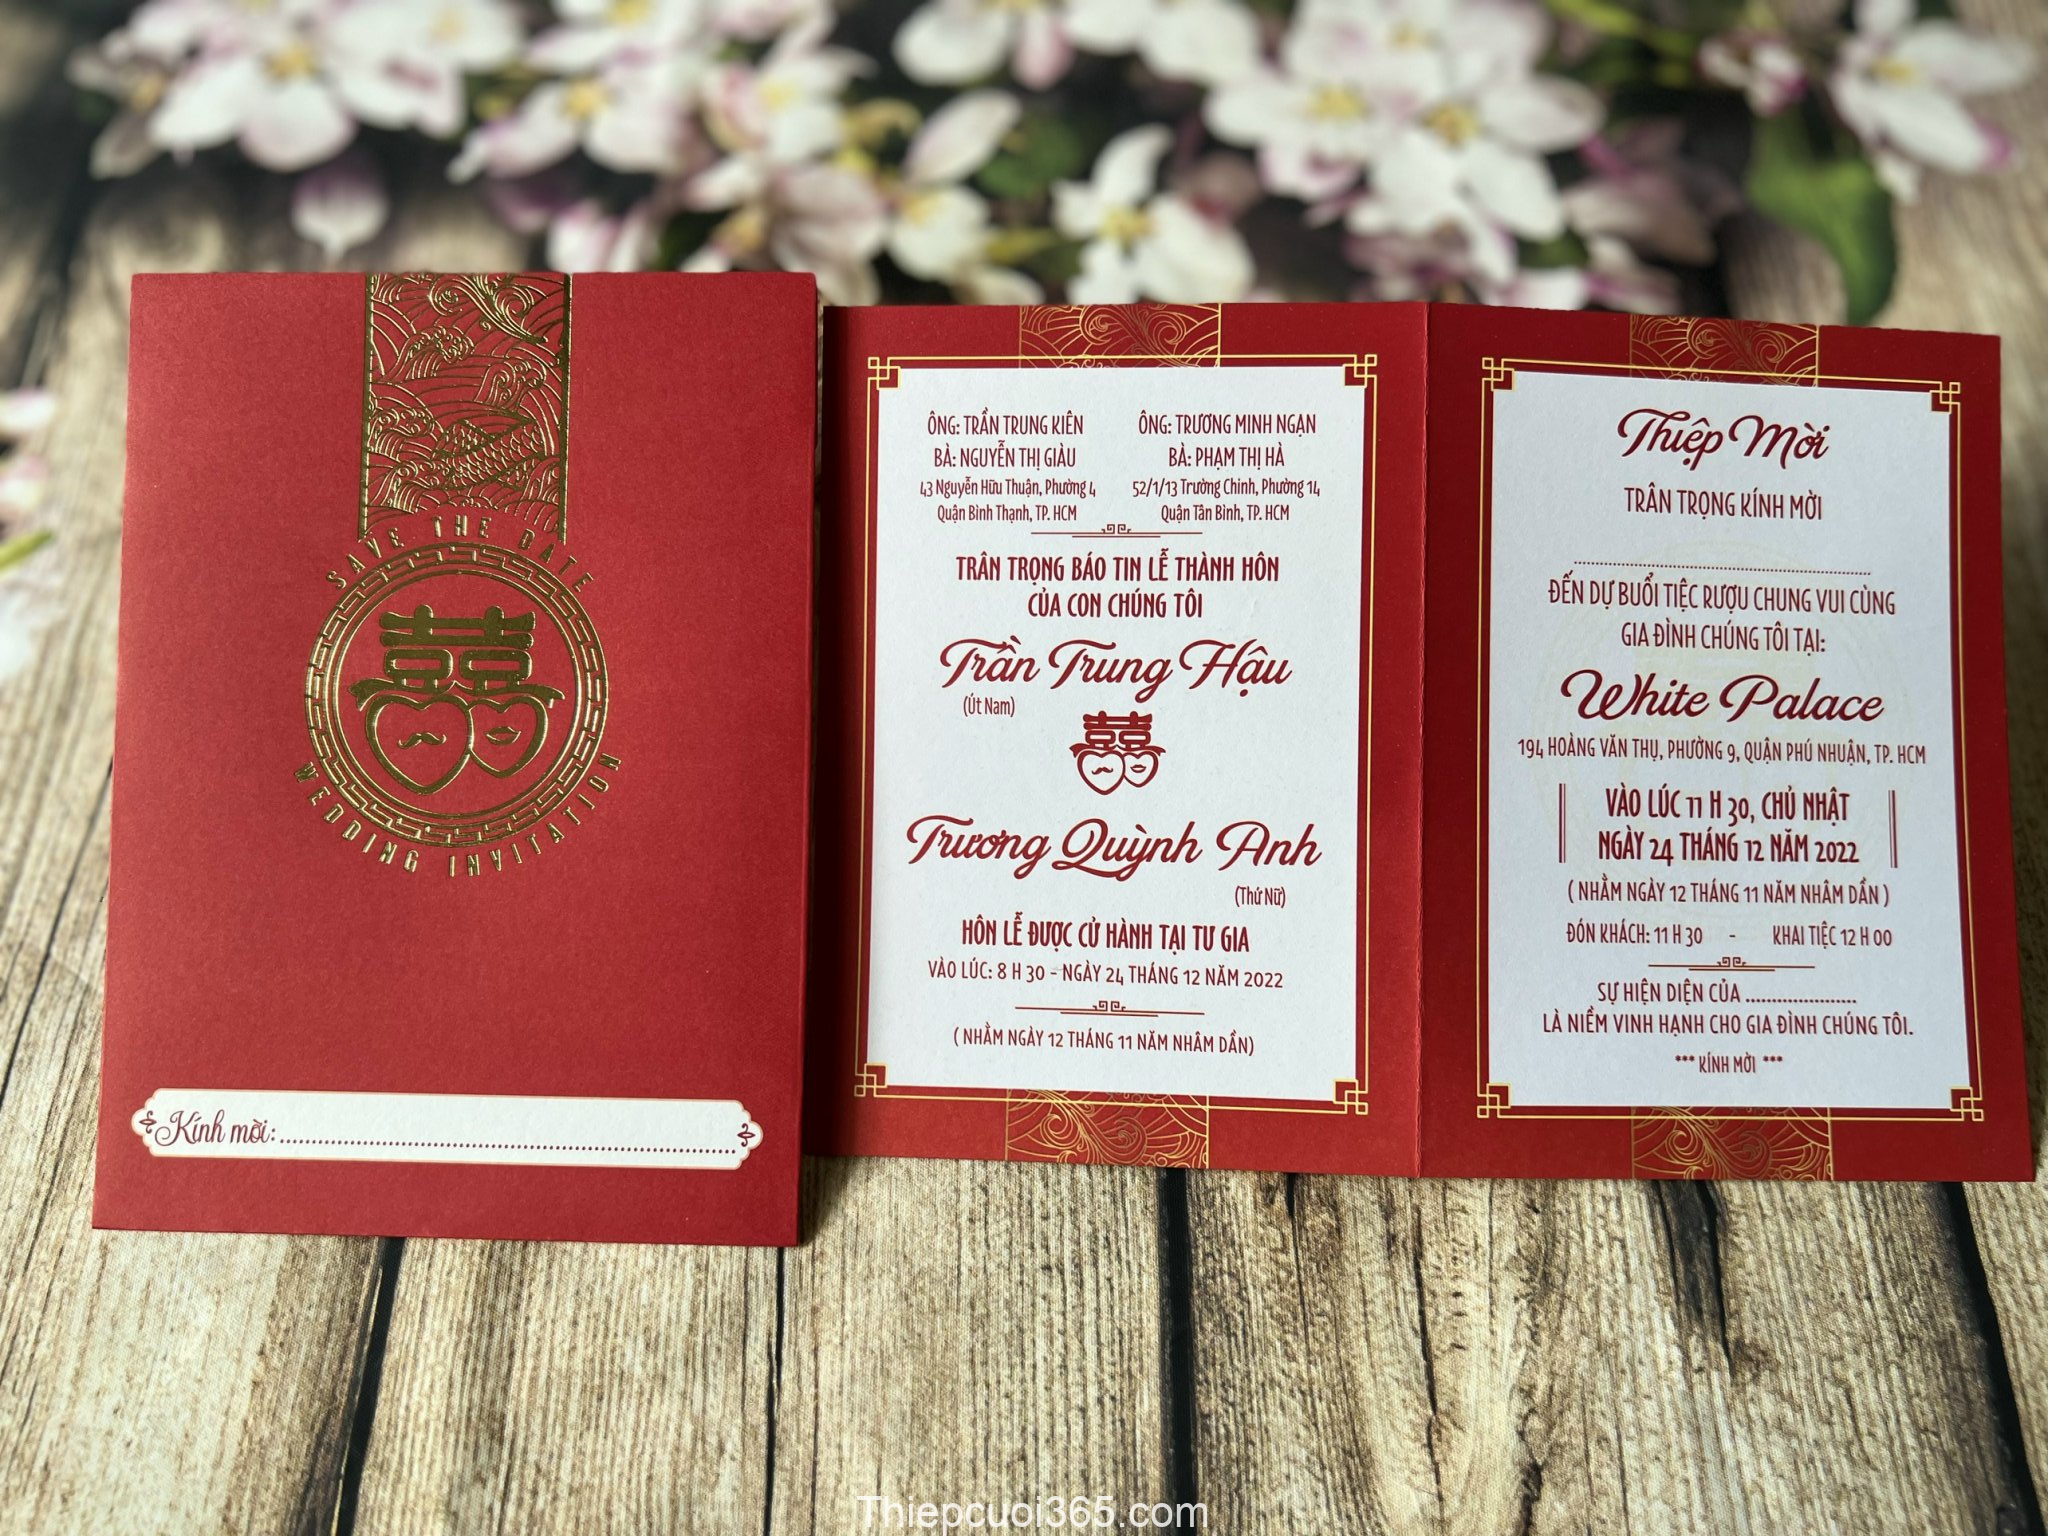 Thiệp cưới offset đỏ ép kim vàng là lựa chọn hoàn hảo cho những ai yêu thích sự sang trọng, trang trọng. Với nền giấy trắng tinh khôi, gam màu đỏ rực rỡ và những chi tiết được ép kim vàng, thiệp cưới này chắc chắn sẽ làm say đắm những khách mời tham dự đám cưới của bạn.